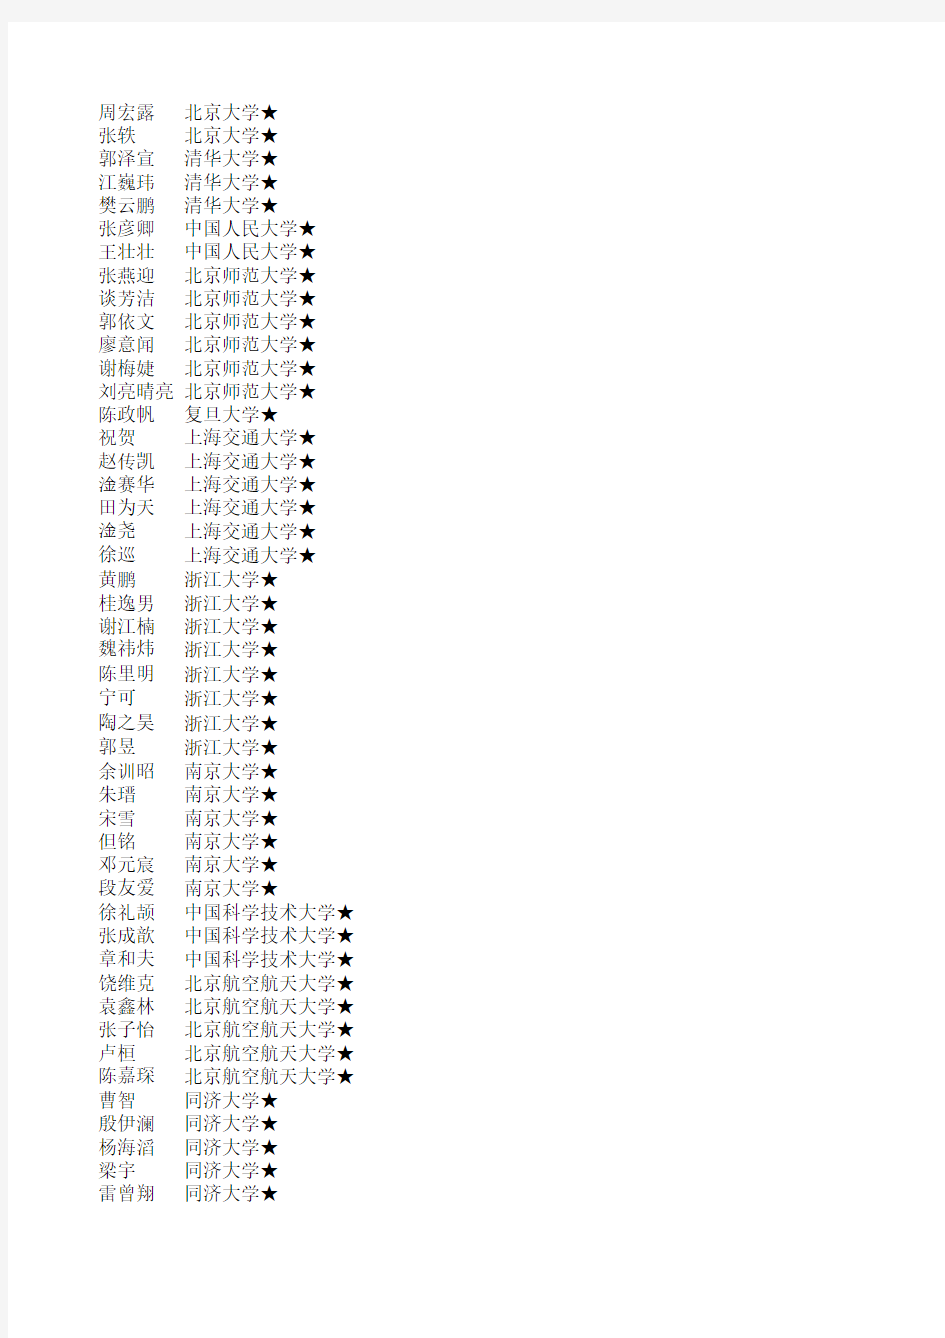 九江一中2011年高考正式录取名单下载 第一批 - 九